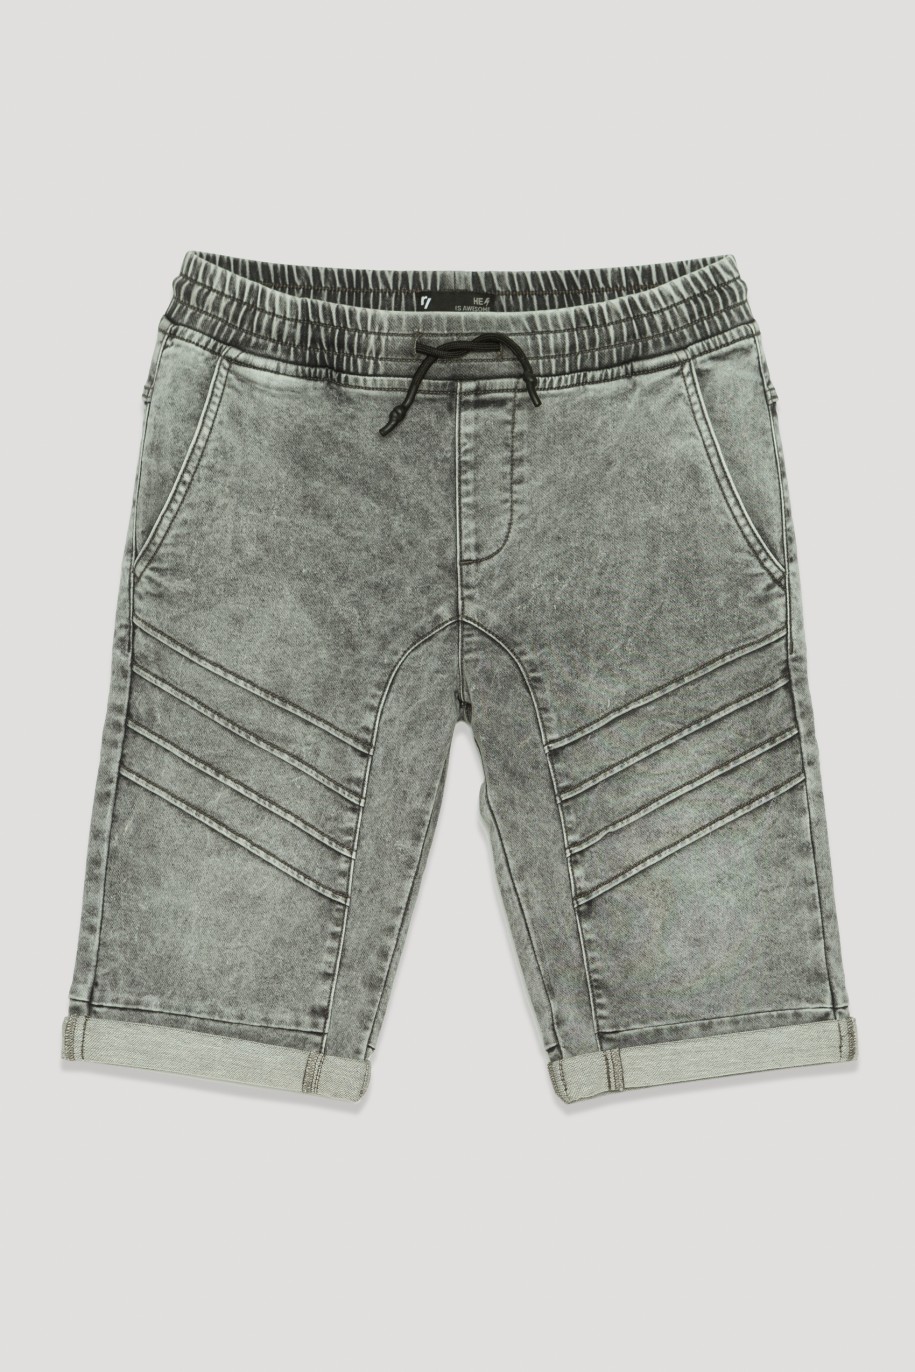 Szare krótkie jeansowe spodenki na gumce - 41195